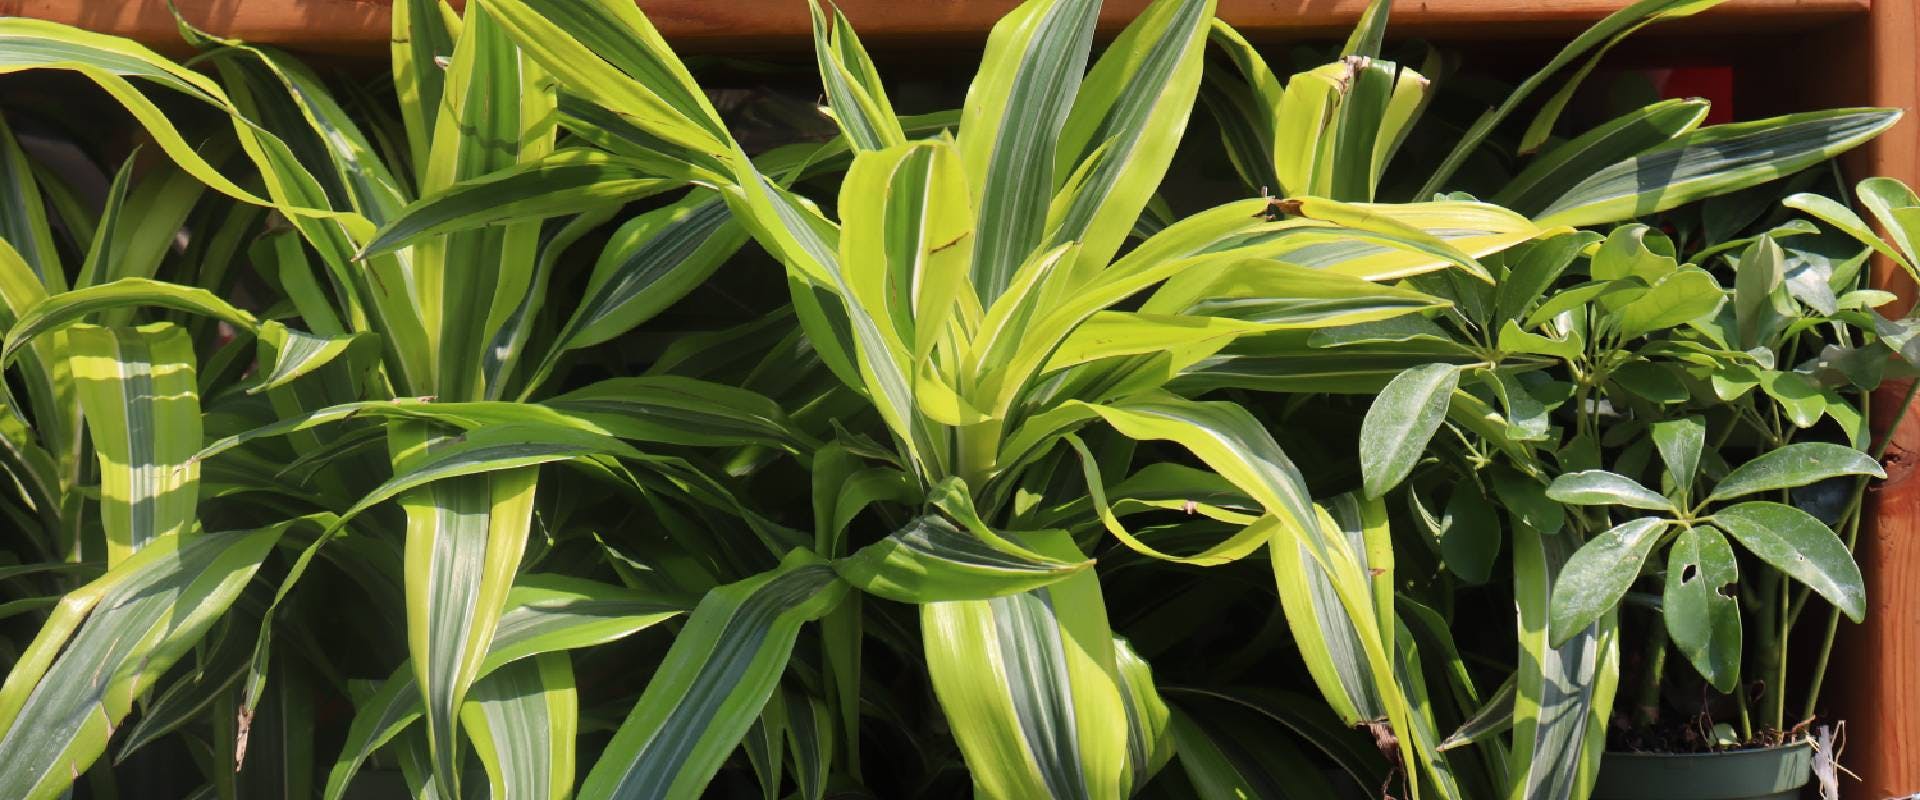 Close-up of a dracaena plant